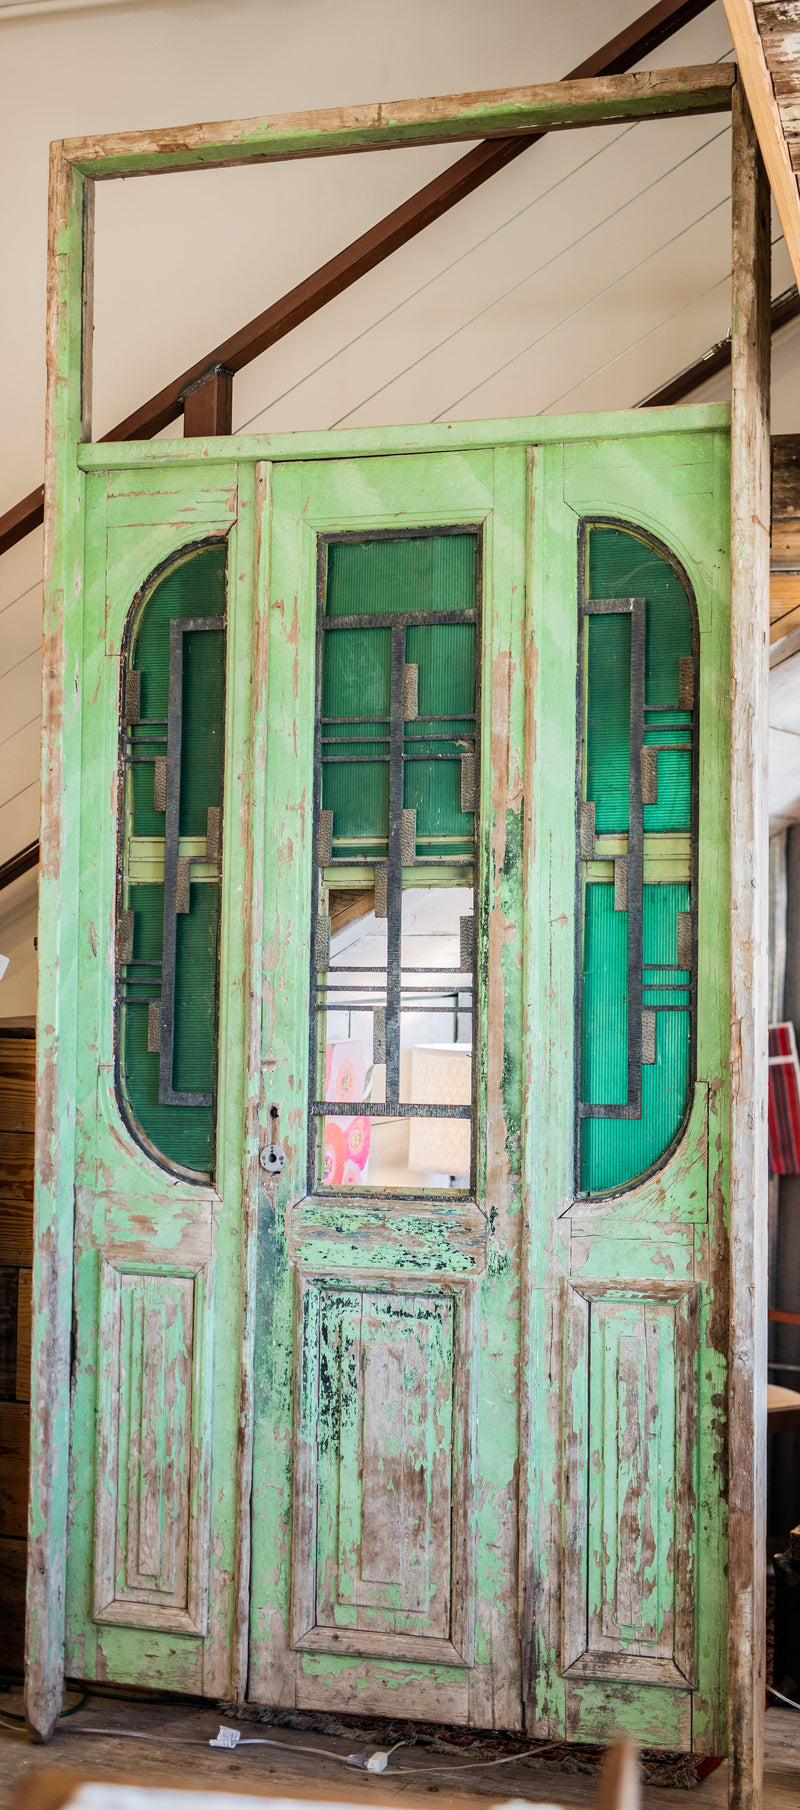 Iron Inset Primitive Green Wooden Double Doors